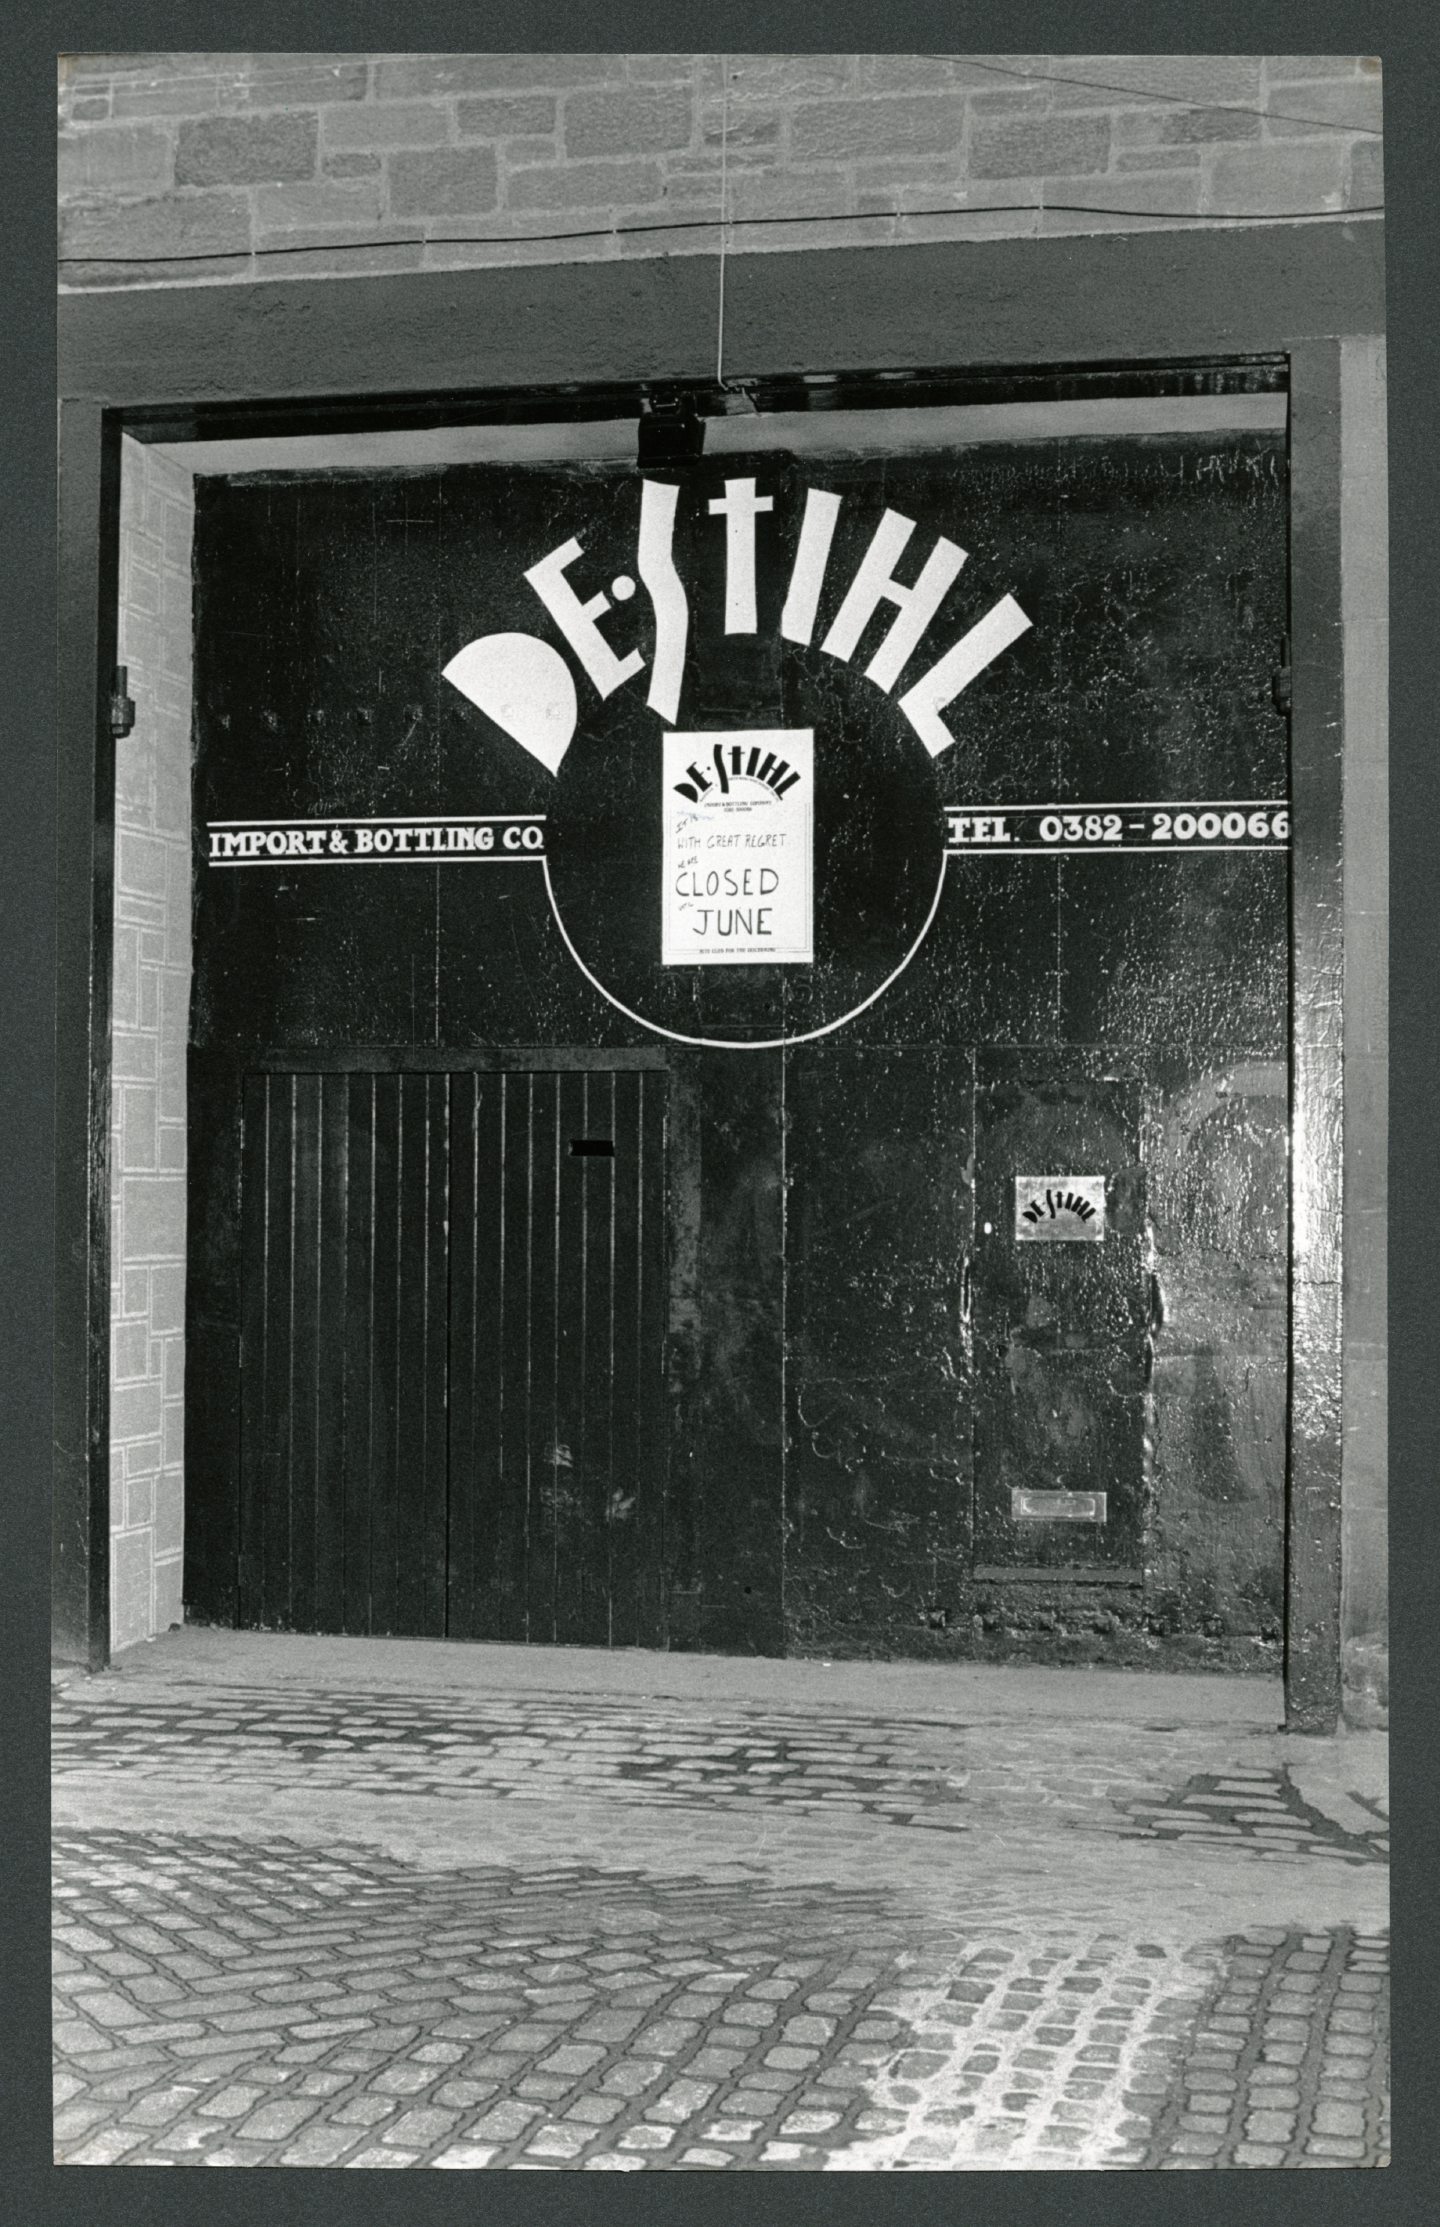 The front door of De Stihl's in Dundee